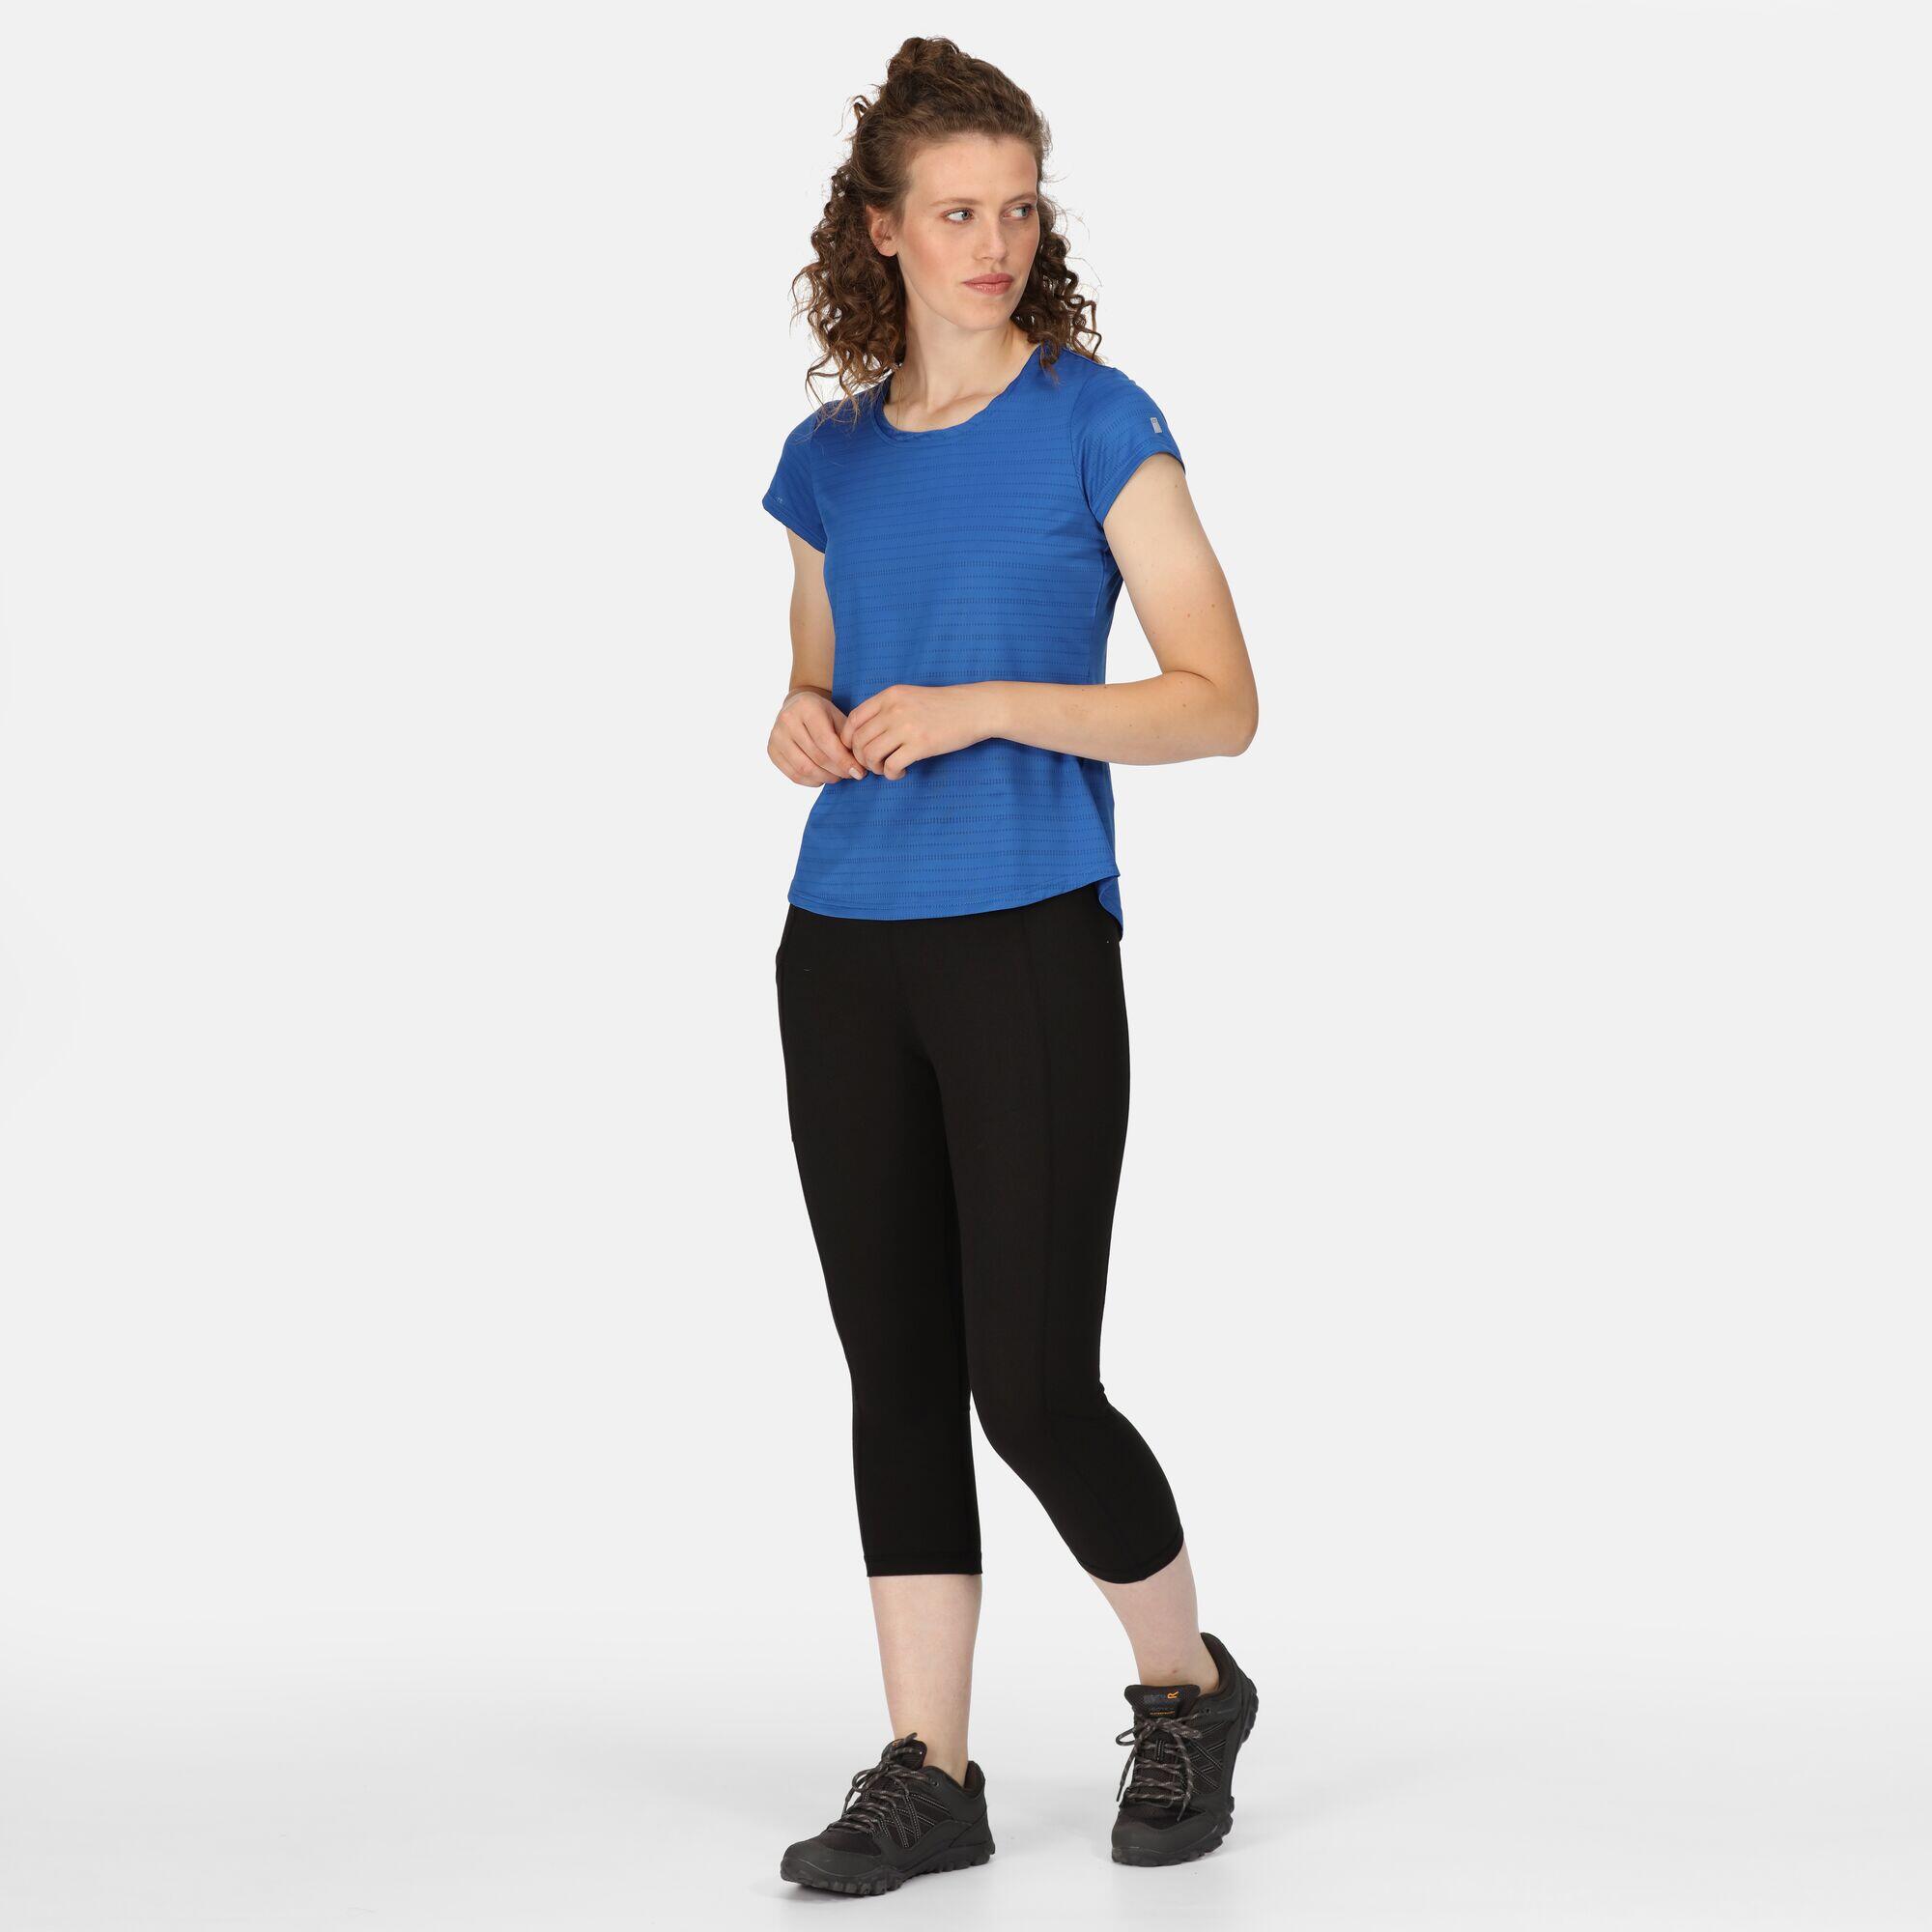 Limonite VI Women's Fitness Short Sleeve T-Shirt 3/7